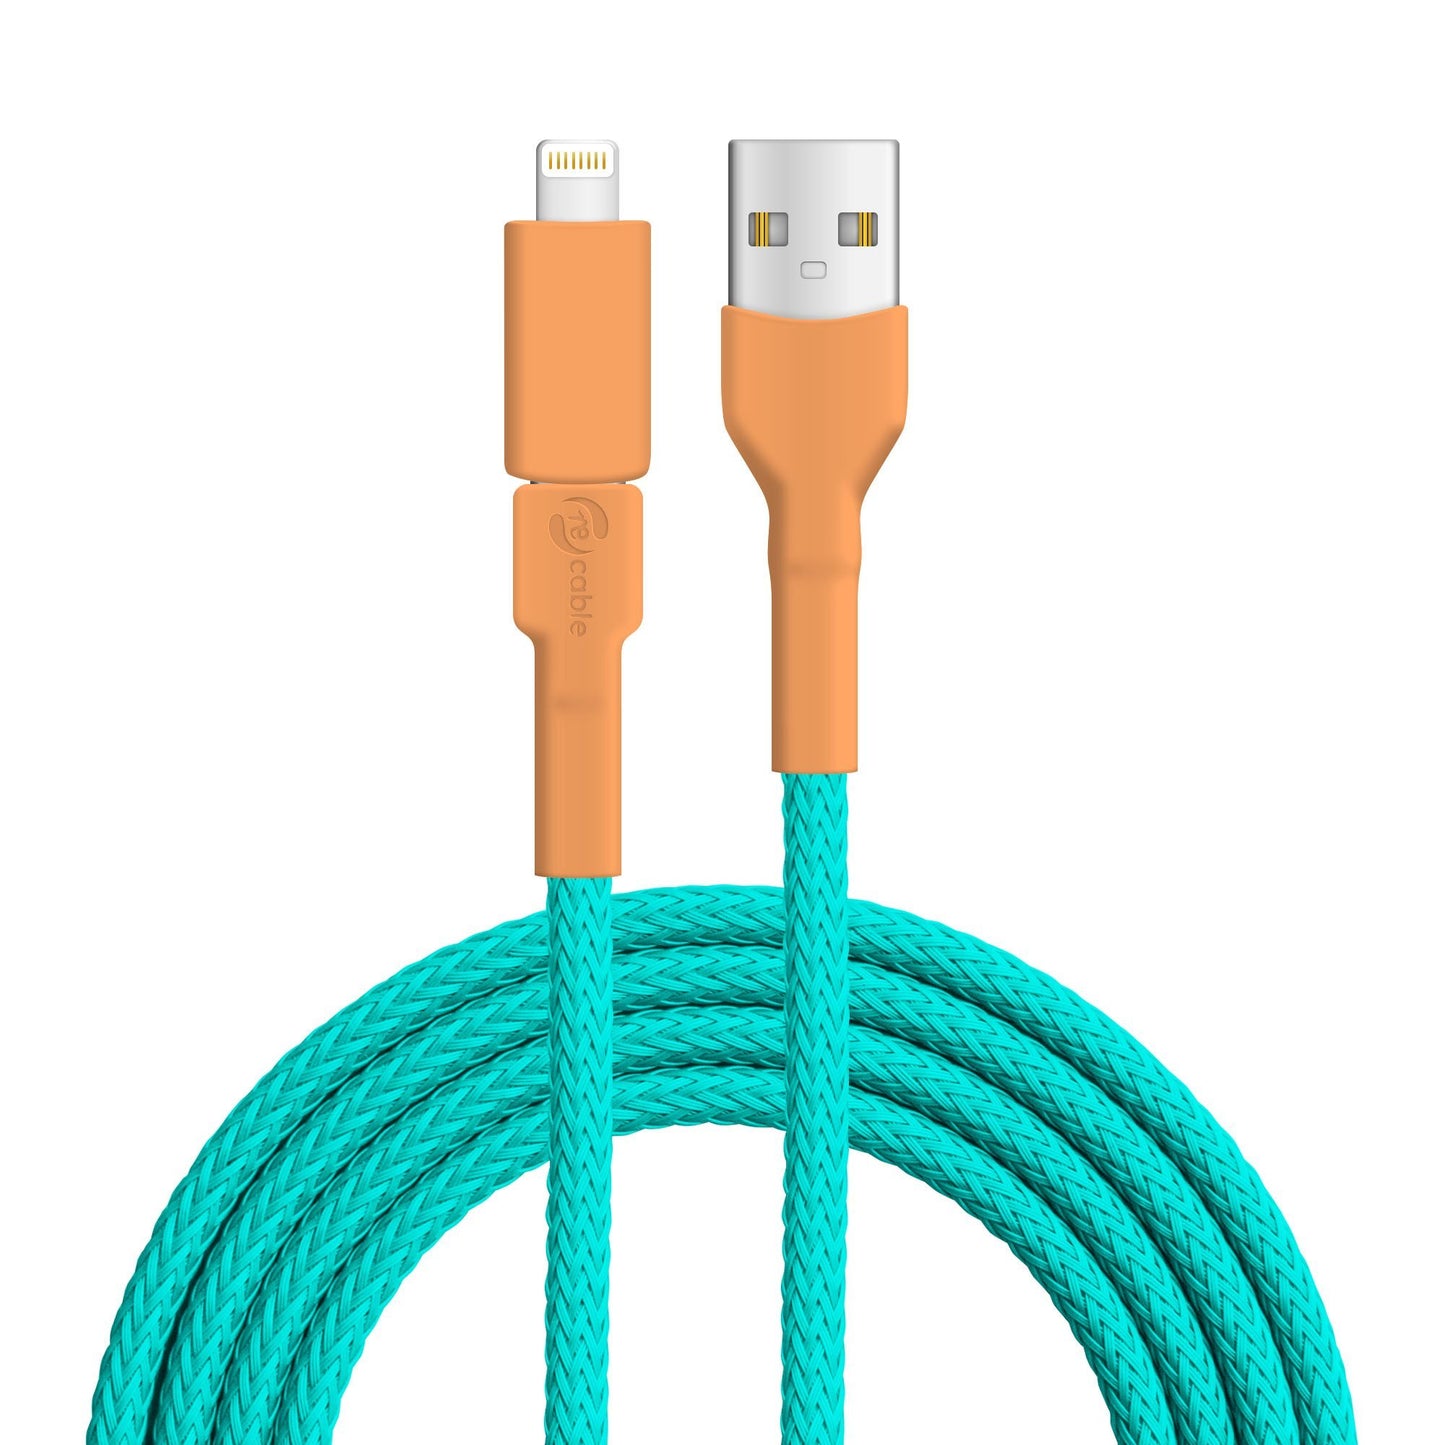 USB Kabel in den Farben des Eisvogels orange und türkis mit USB A Stecker, Lightning (iPhone) Stecker und PET-Geflecht Kabel